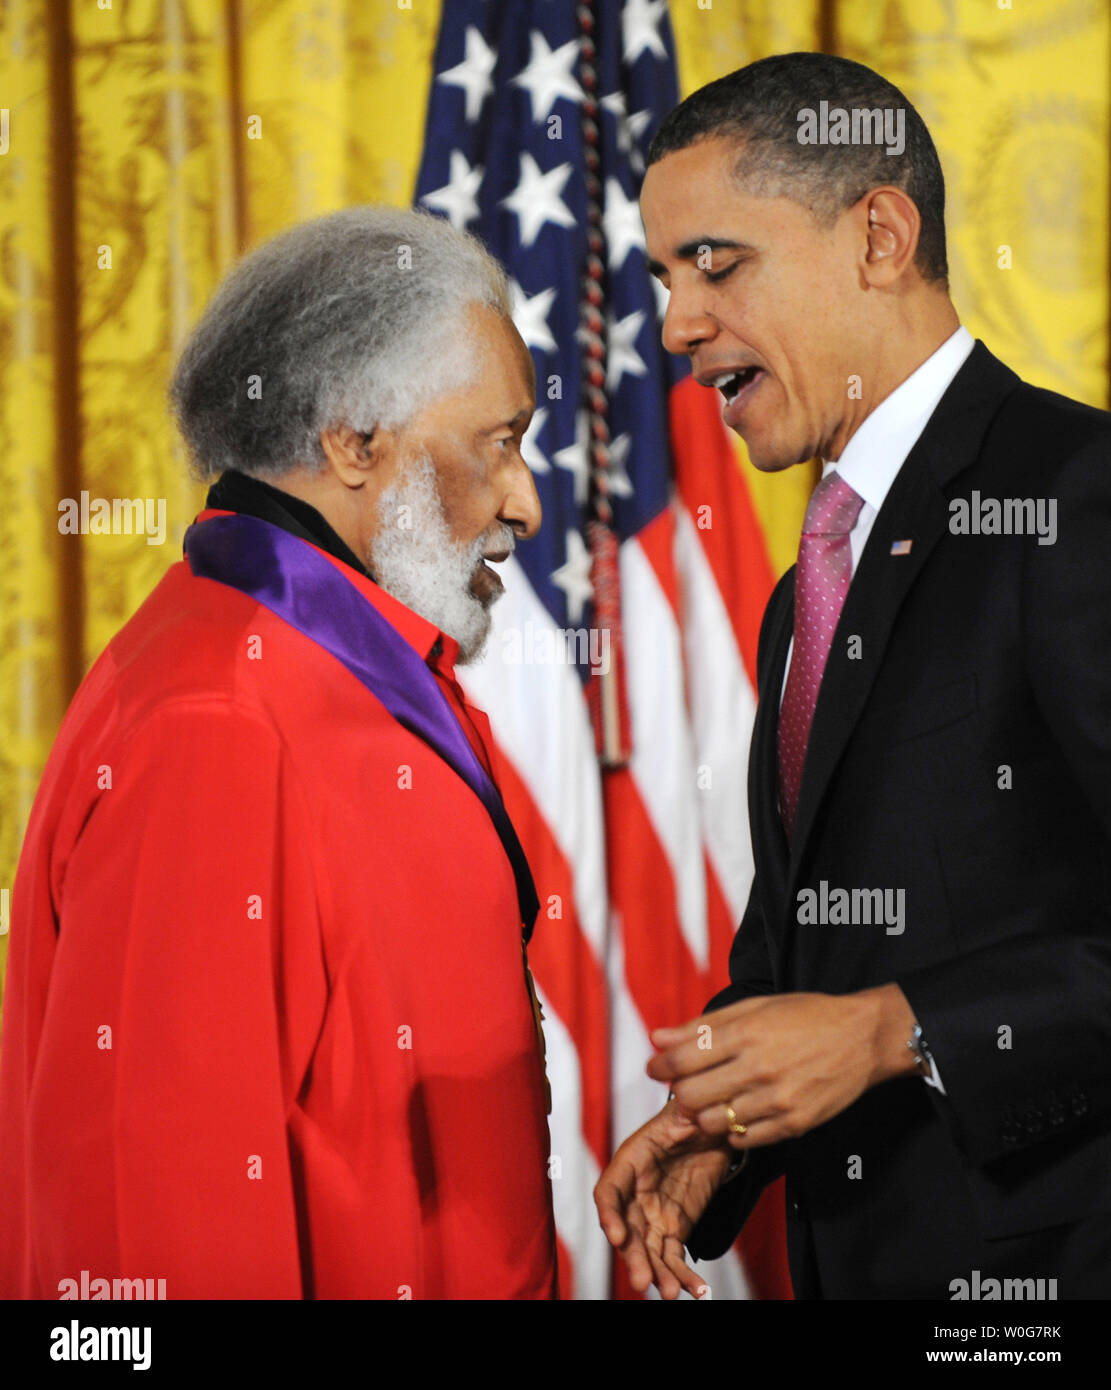 Il Presidente degli Stati Uniti Barack Obama presenta il 2010 National Medal of Arts per la leggenda del jazz Sonny Rollins nella Sala Est della Casa Bianca a Washington il 2 marzo 2011. I premi annuali sono gestite dalla dotazione nazionale per le arti. UPI/Pat Benic Foto Stock